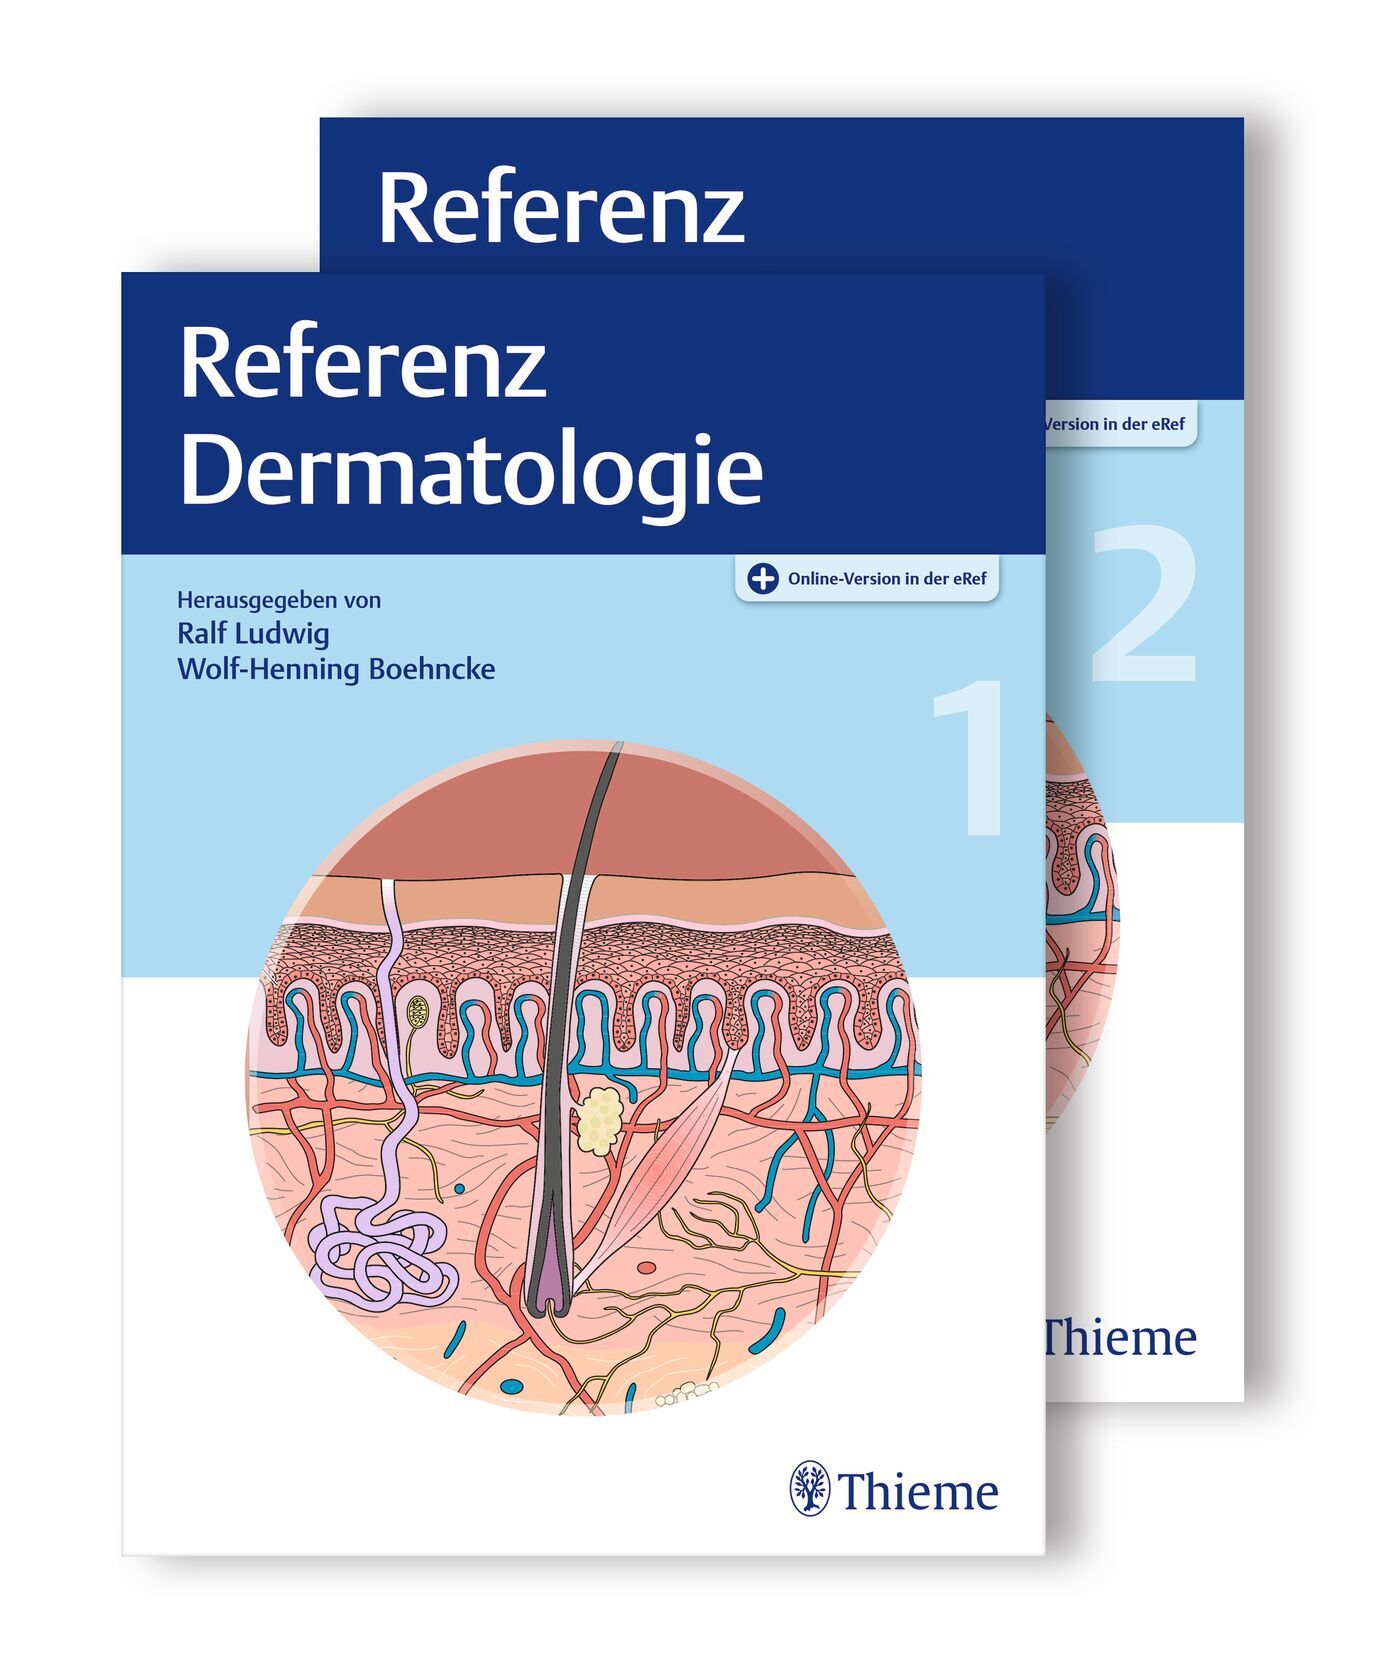 Referenz Dermatologie, 9783132200104